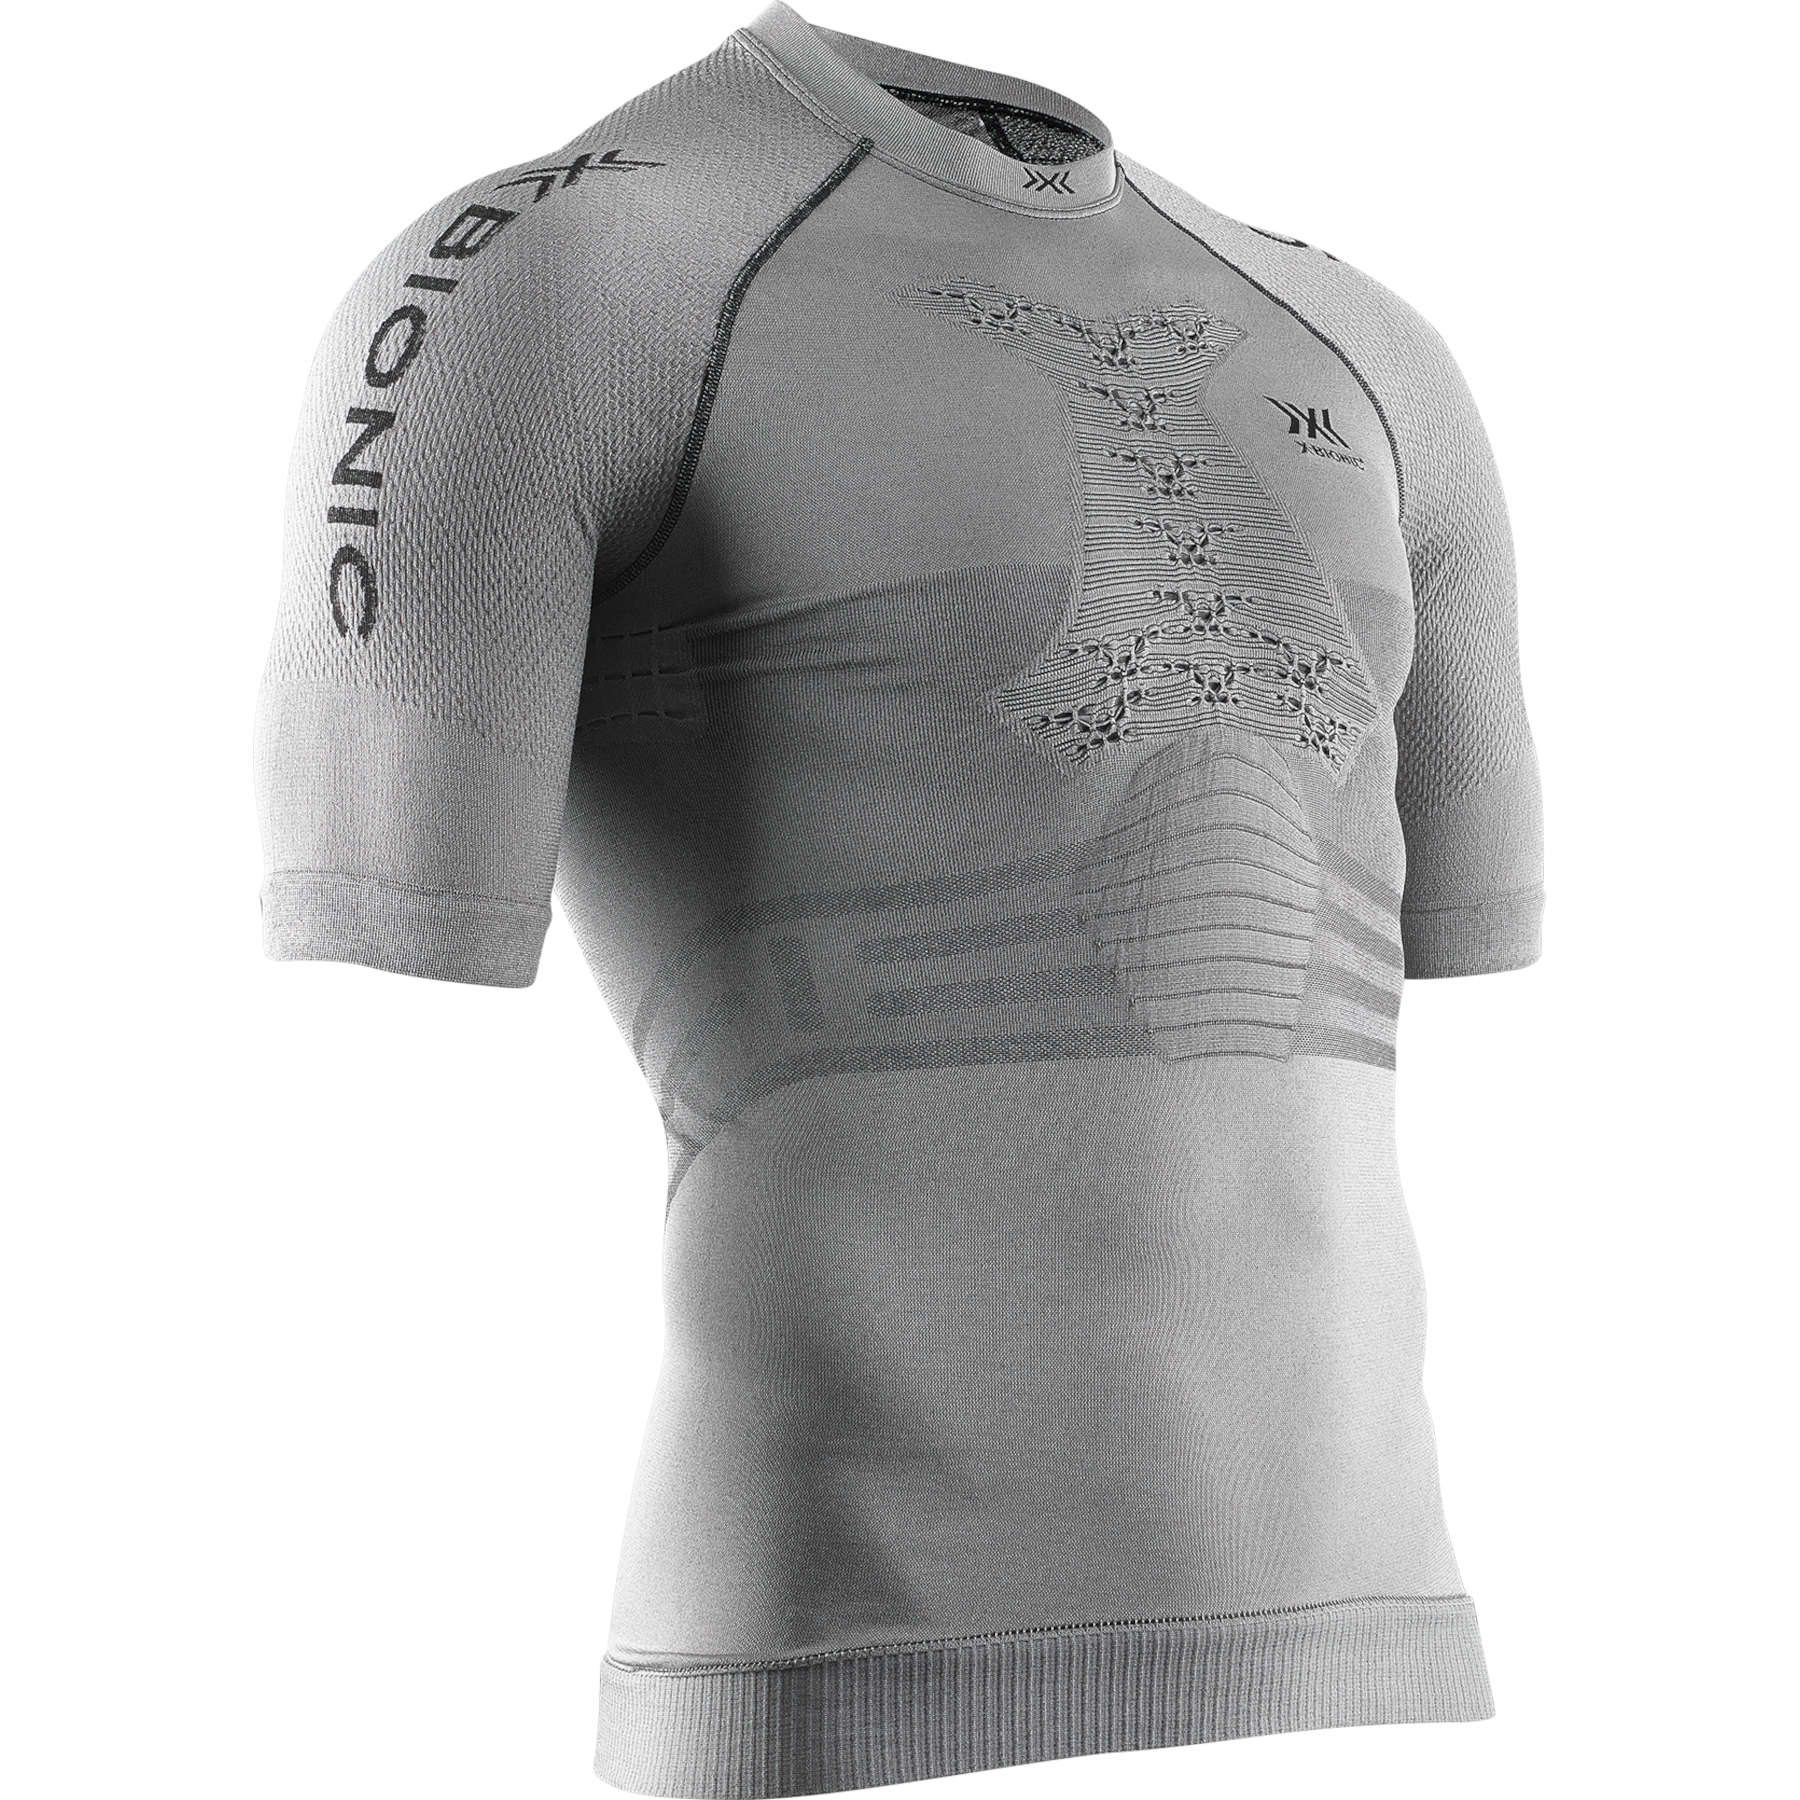 Bild von X-Bionic Fennec 4.0 Run Kurzarmshirt für Herren - anthracite/silver